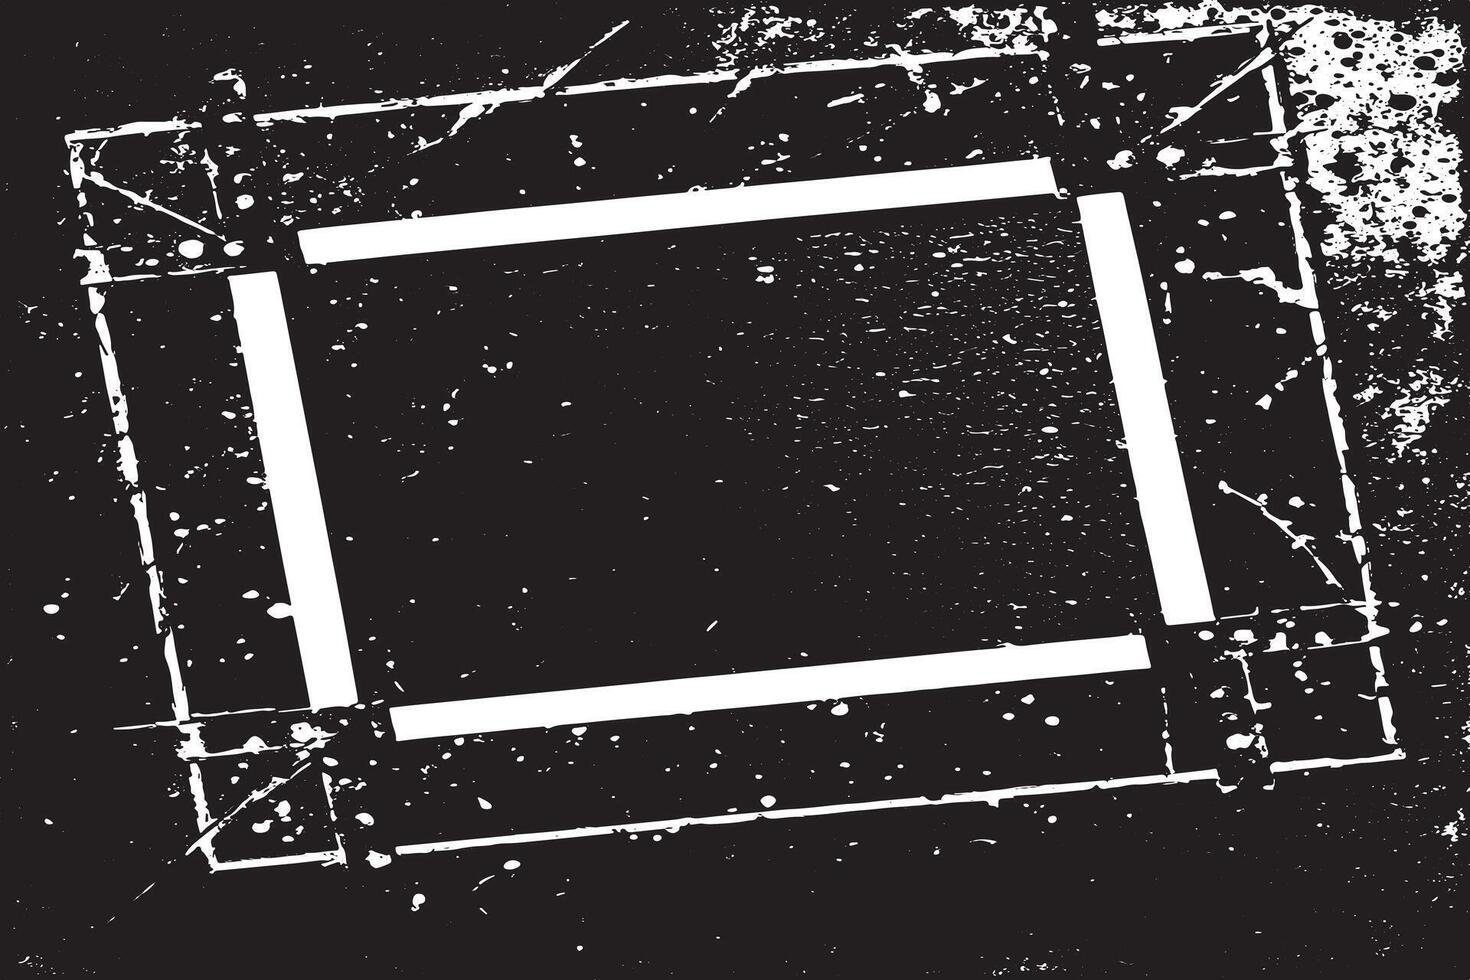 schwarz und Weiß Grunge entstresst Overlay Bild von Foto Rahmen oder einfach Rahmen zum Hintergrund oder Textur. vektor